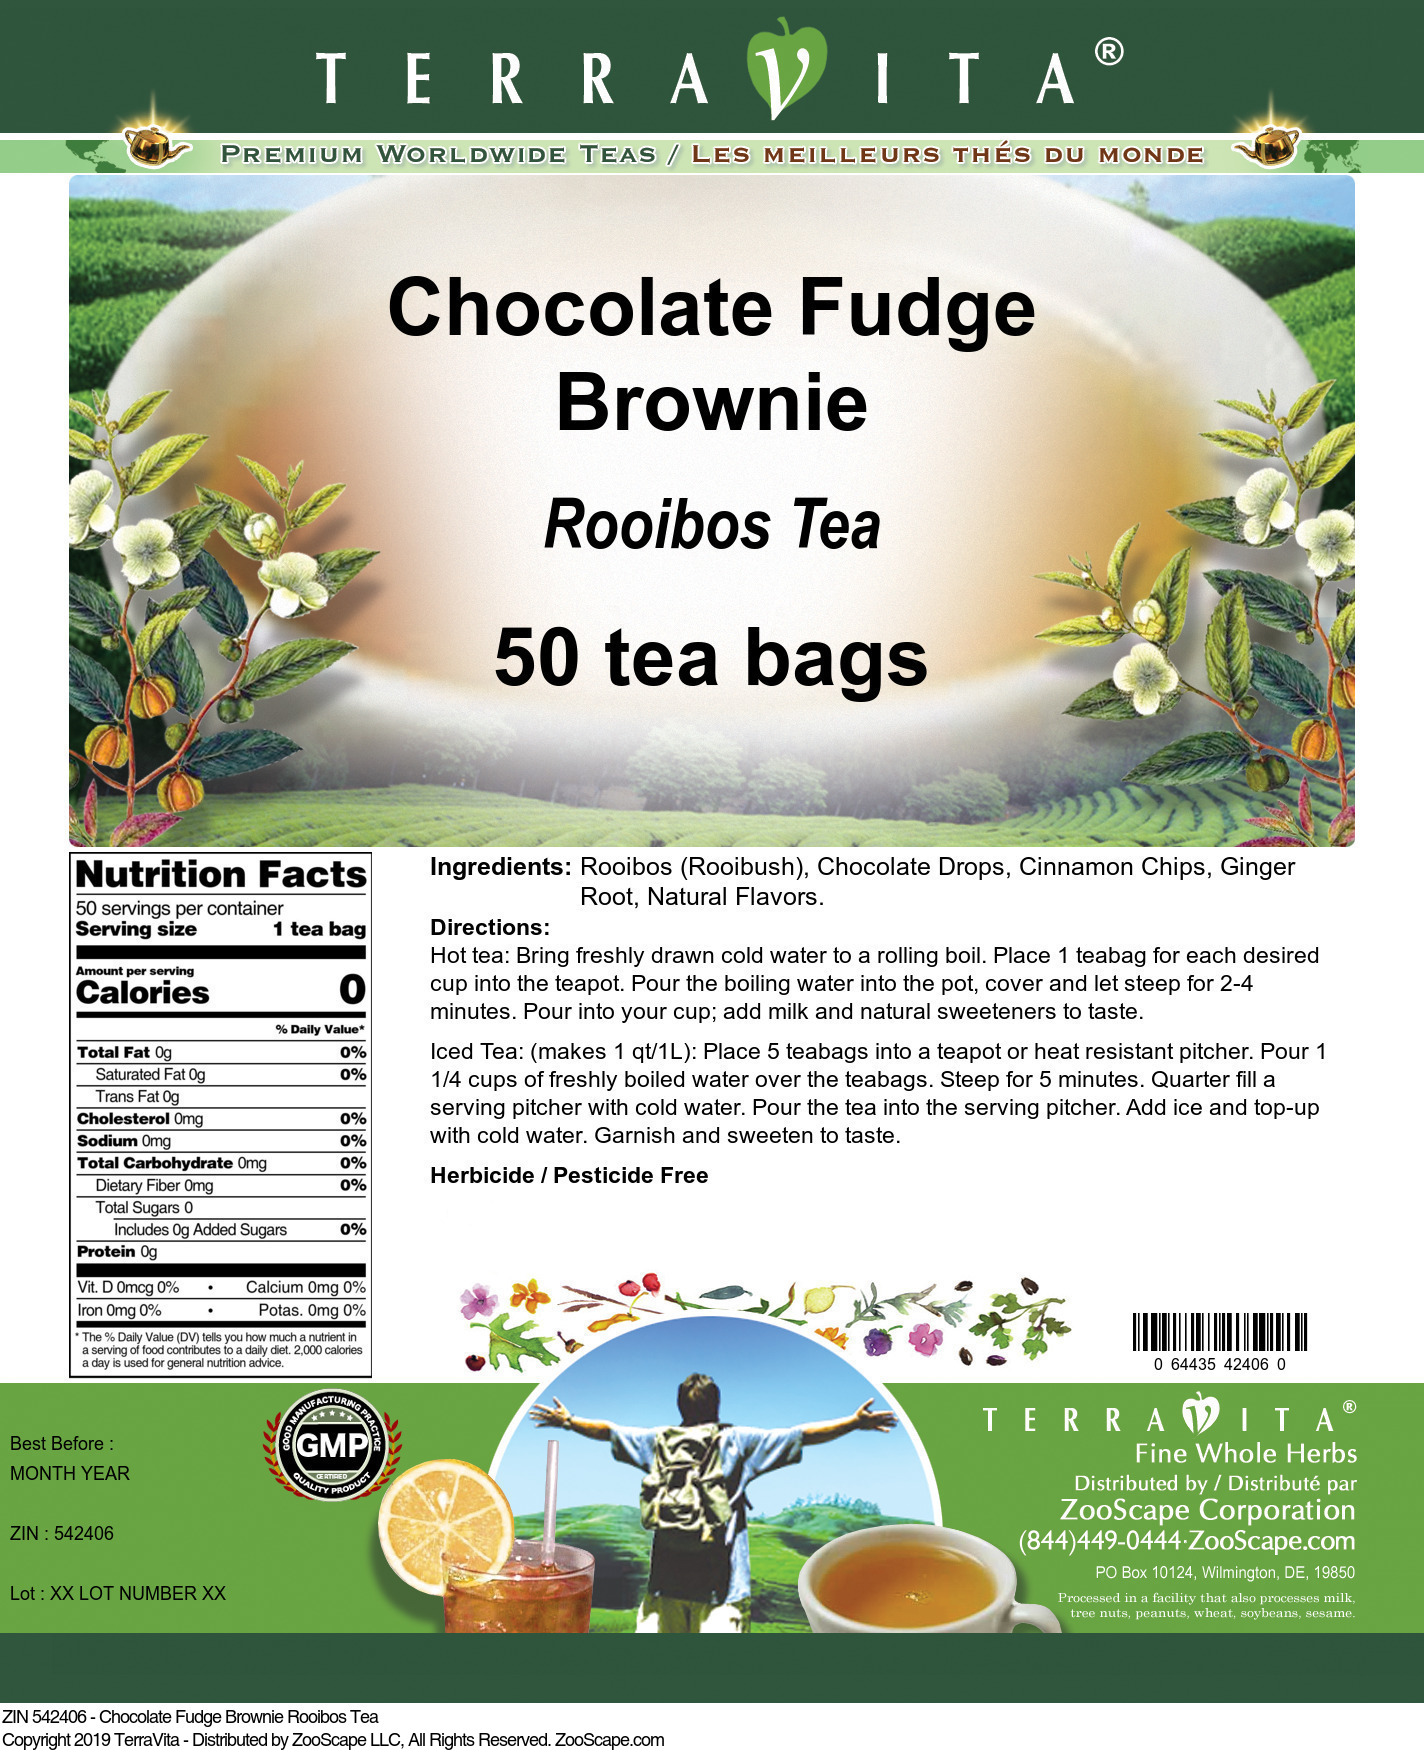 Chocolate Fudge Brownie Rooibos Tea - Label